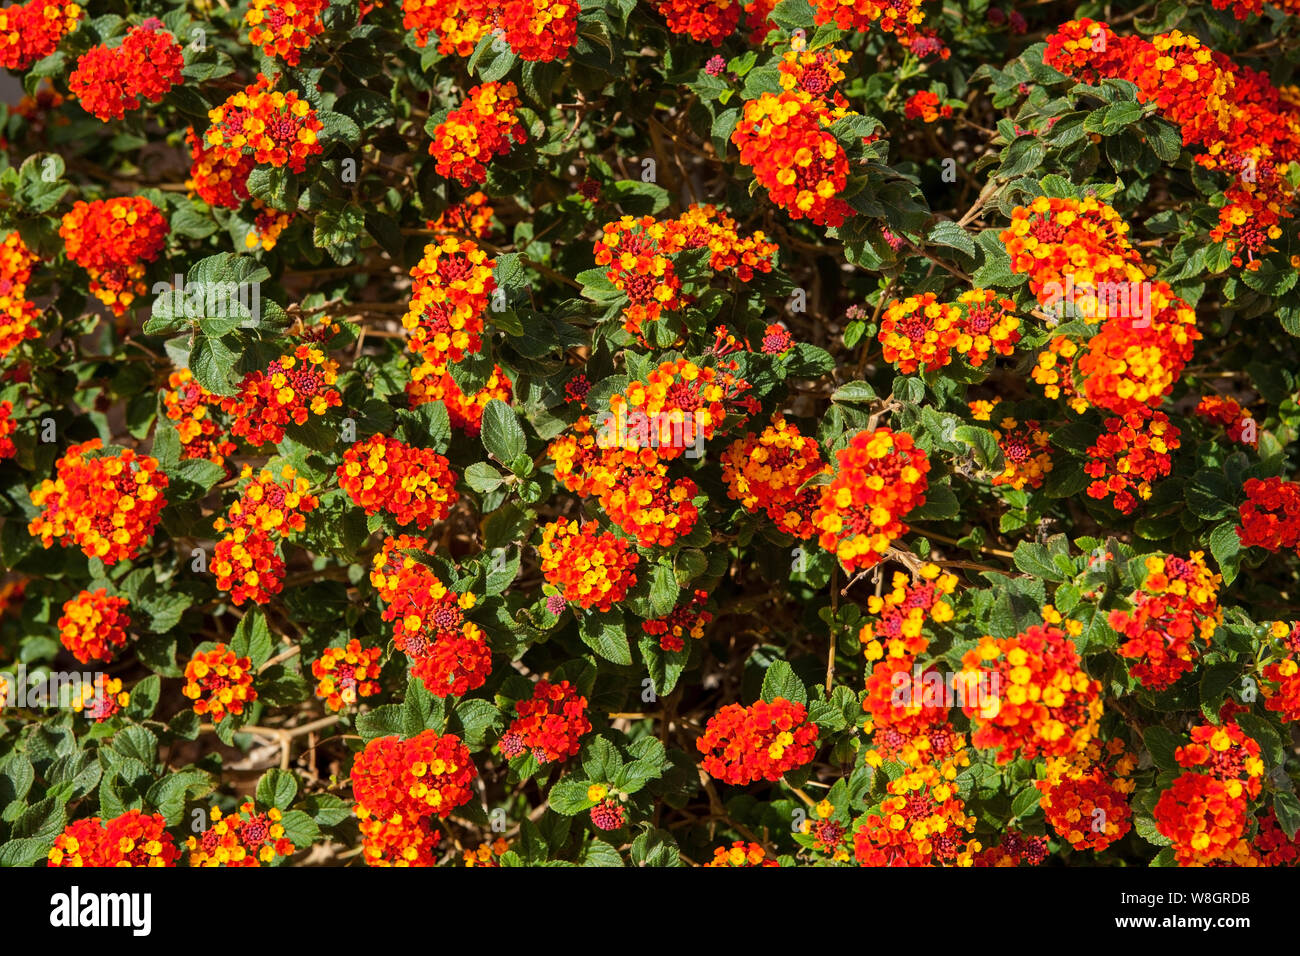 Lantana est un genre d'environ 150 espèces de plantes à fleurs vivaces dans la verveine, de la famille des verbénacées. Banque D'Images